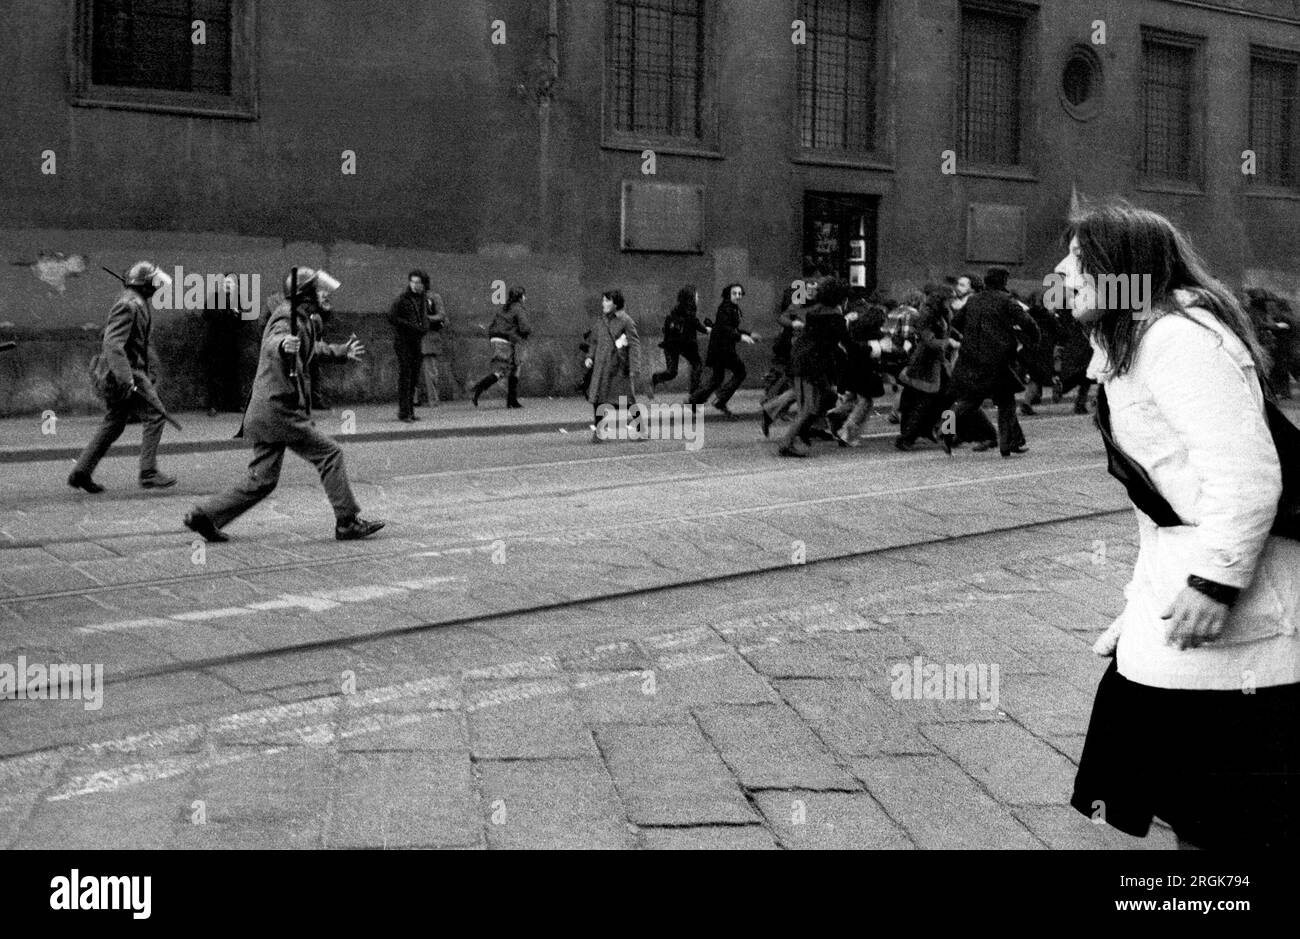 Ausschreitungen zwischen jungen Menschen extremer linker Gruppen und Polizei auf der Piazza del Duomo (Mailand, 1976)...- serivfra giovani dei gruppi di estrema sinistra e polizia auf der piazza del Duomo (Mailand, 1976) Stockfoto